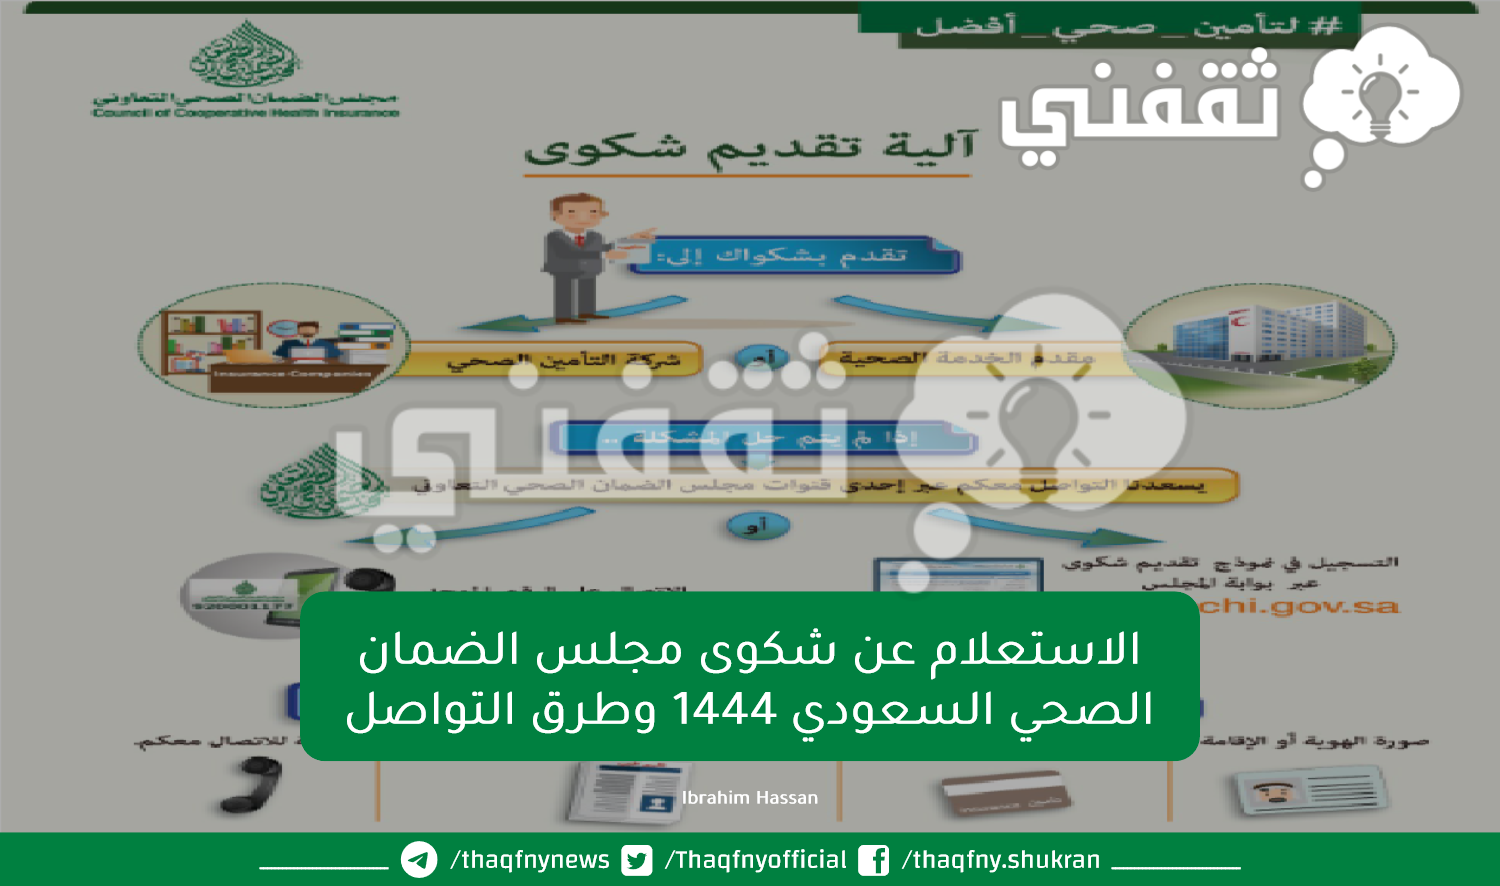 الاستعلام عن شكوى مجلس الضمان الصحي السعودي 1444 وطرق التواصل.png